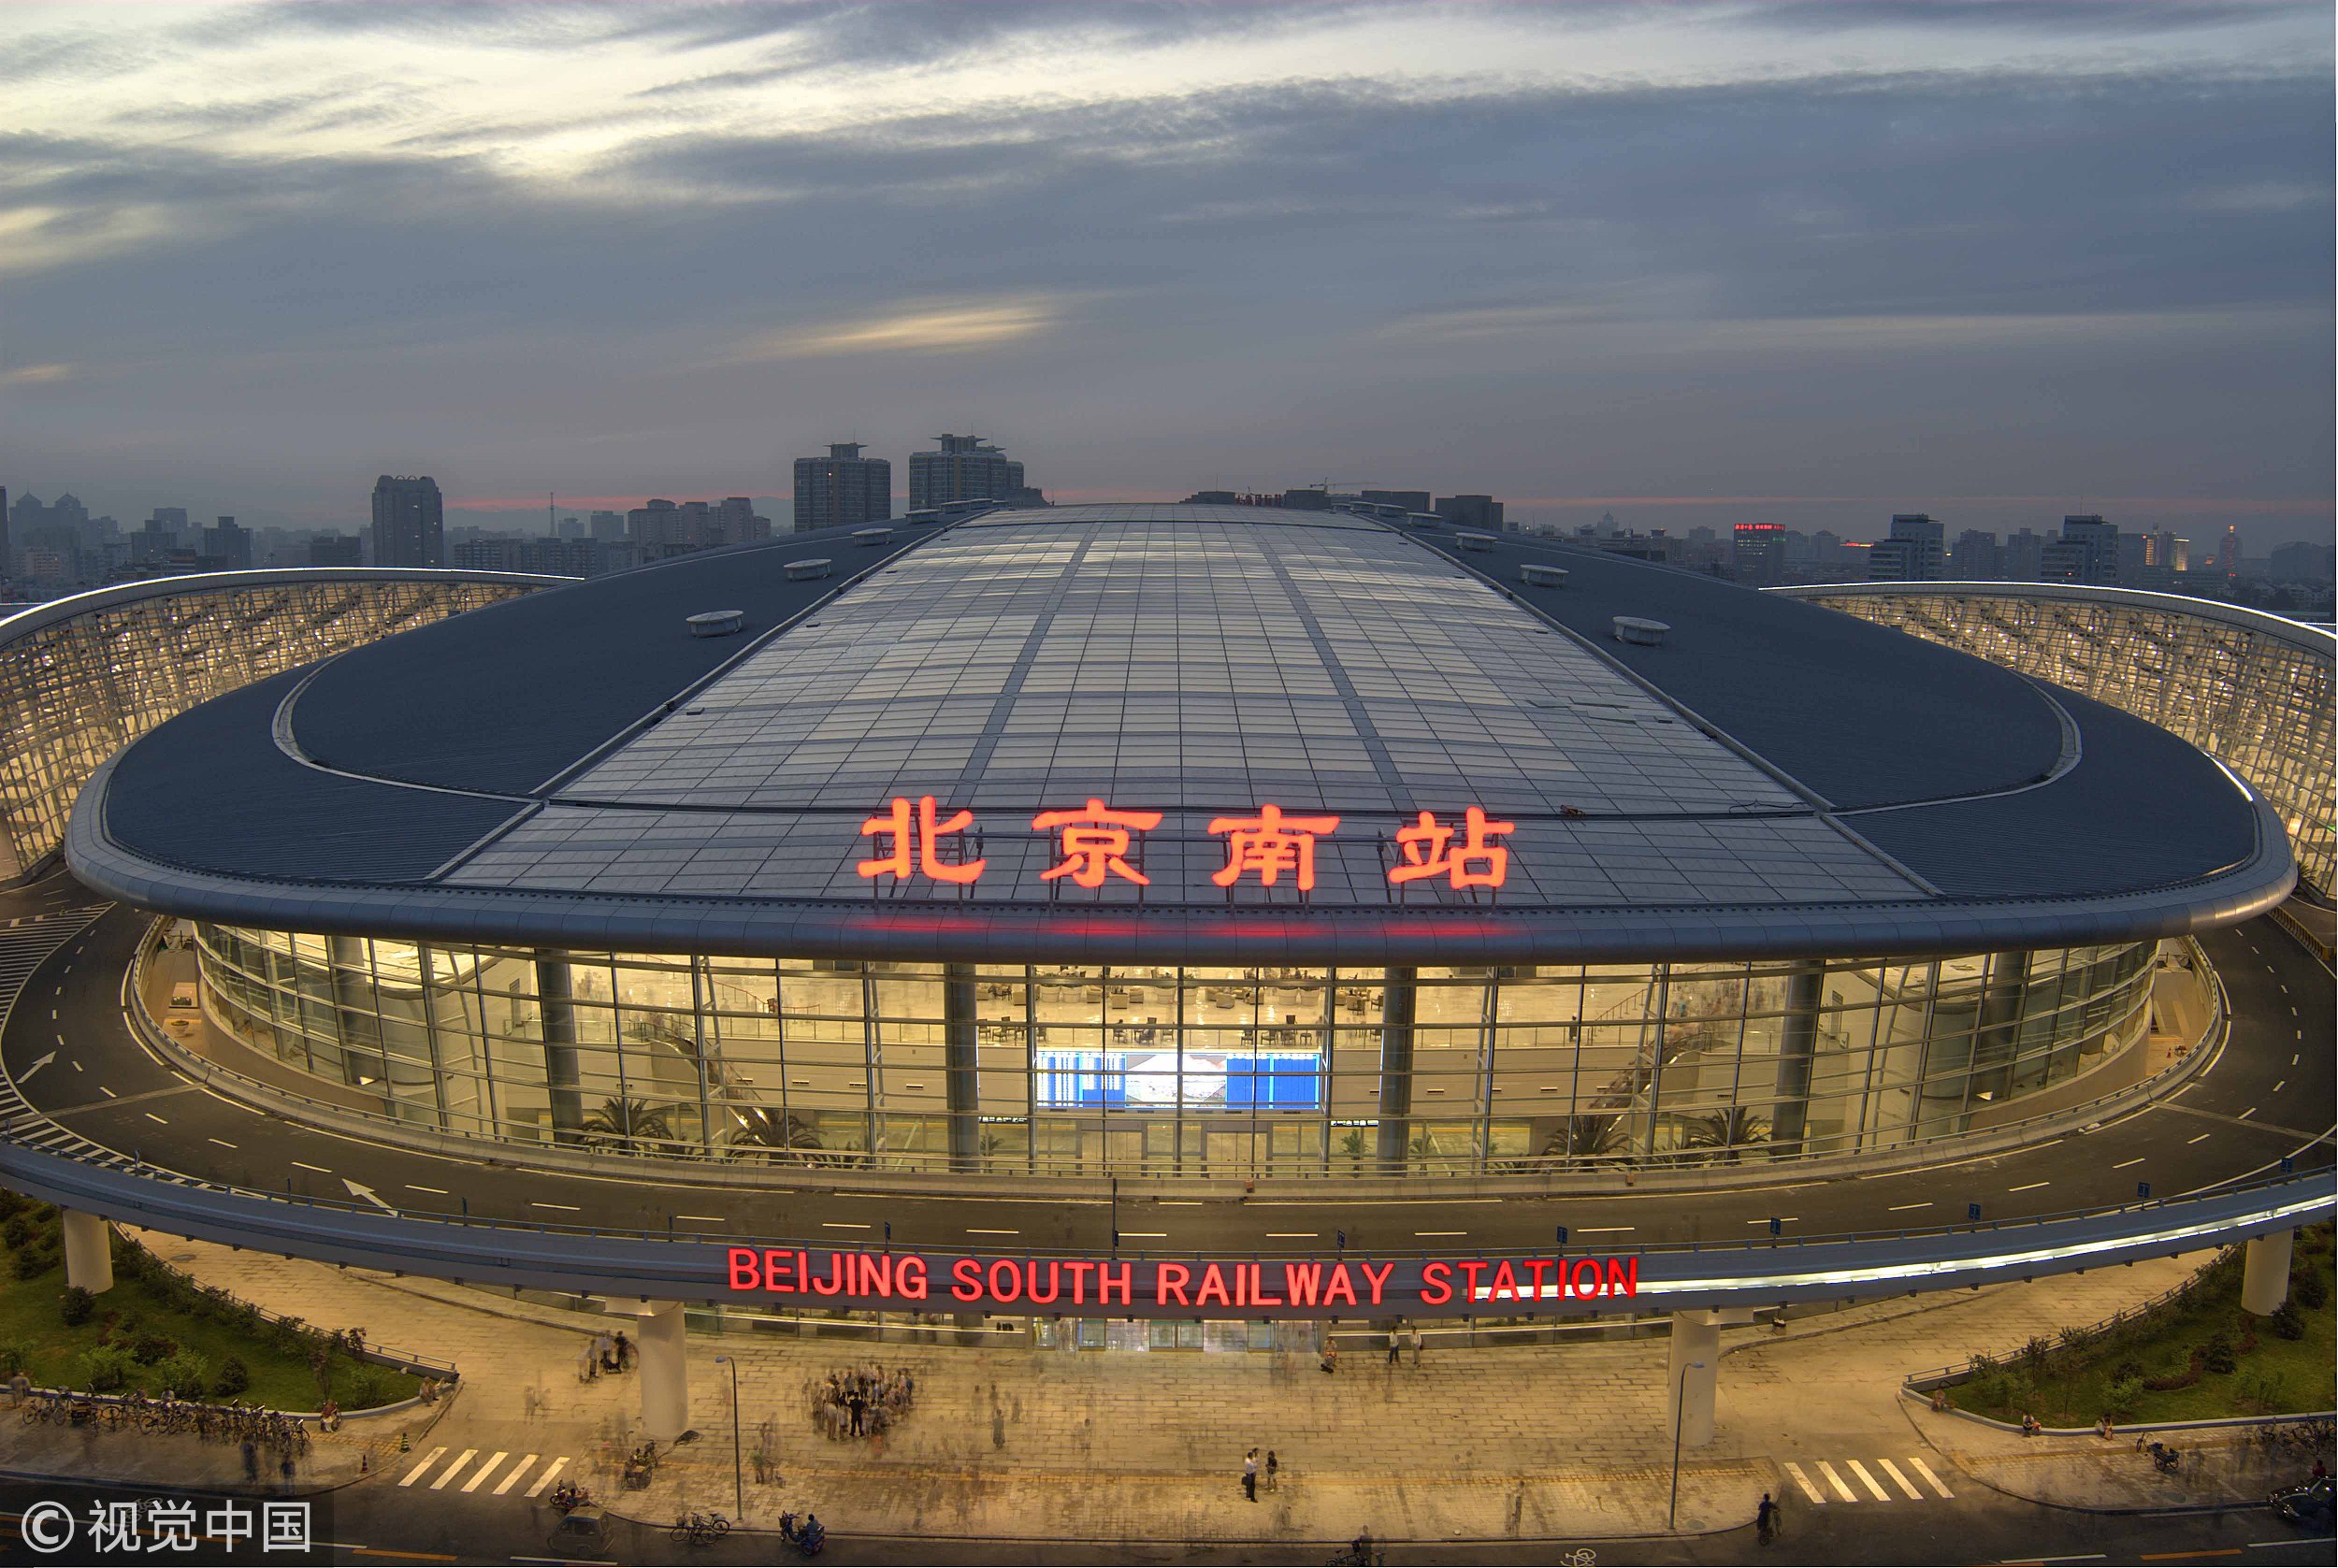 第一督查组夜访北京南站:整治效果明显 机制仍需理顺